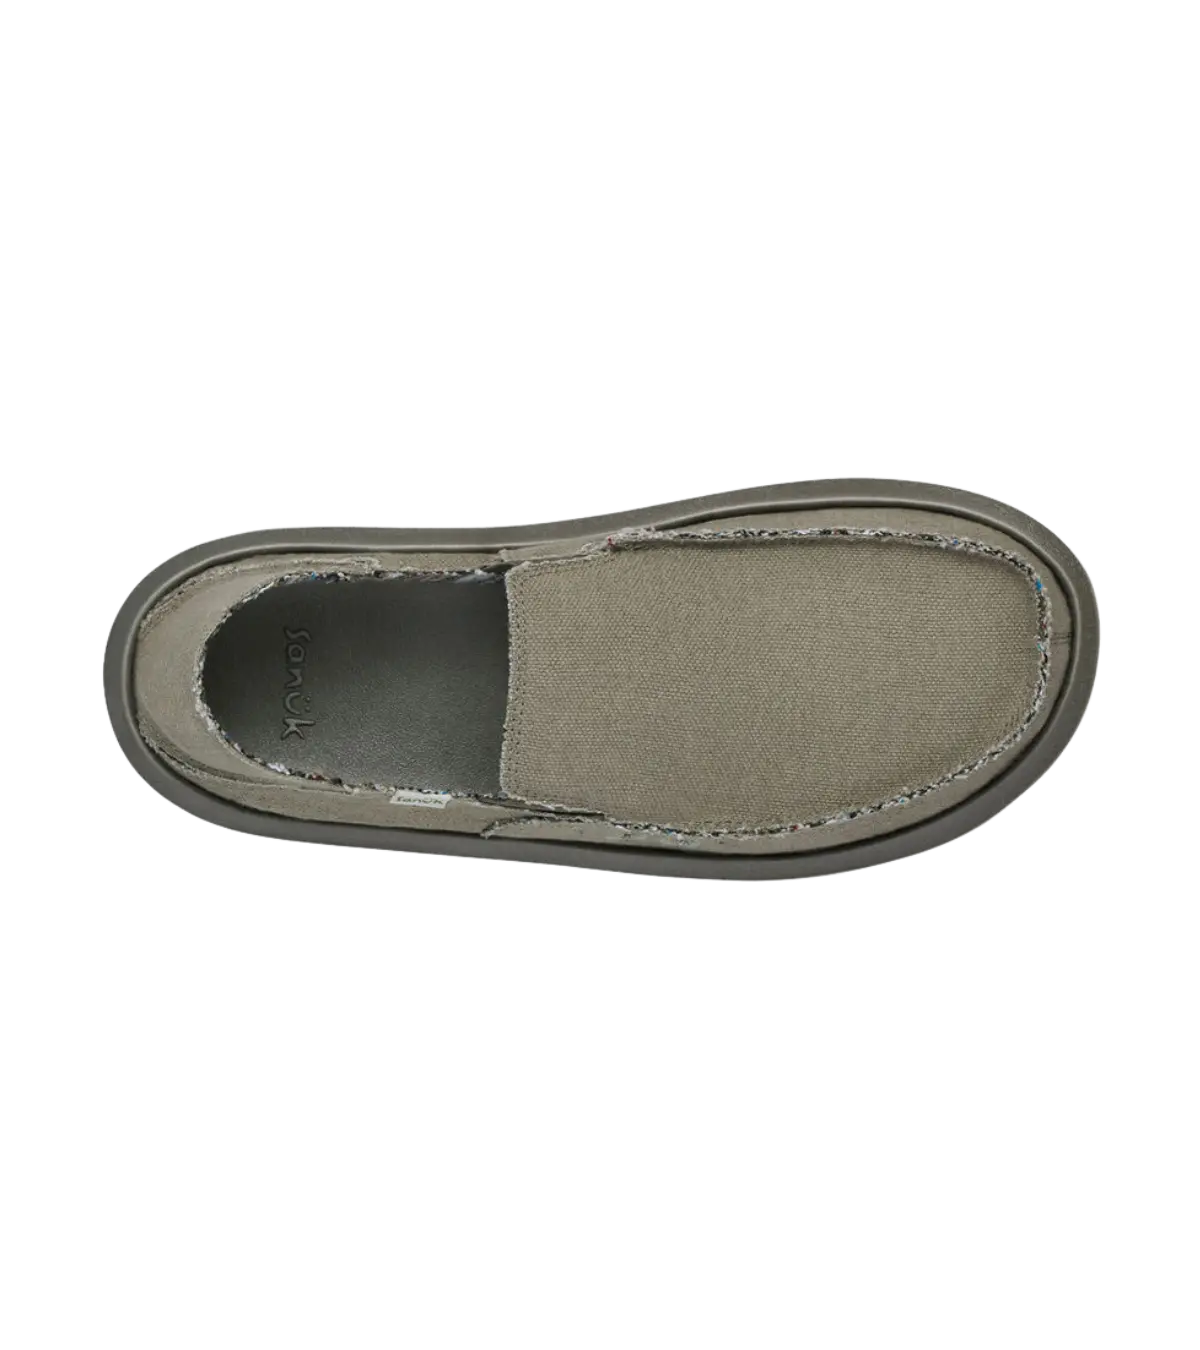 Men's Shoes Sanuk HEMP Slip On Loafers Sidewalk Surfers SMF1010 Natural  Size 9